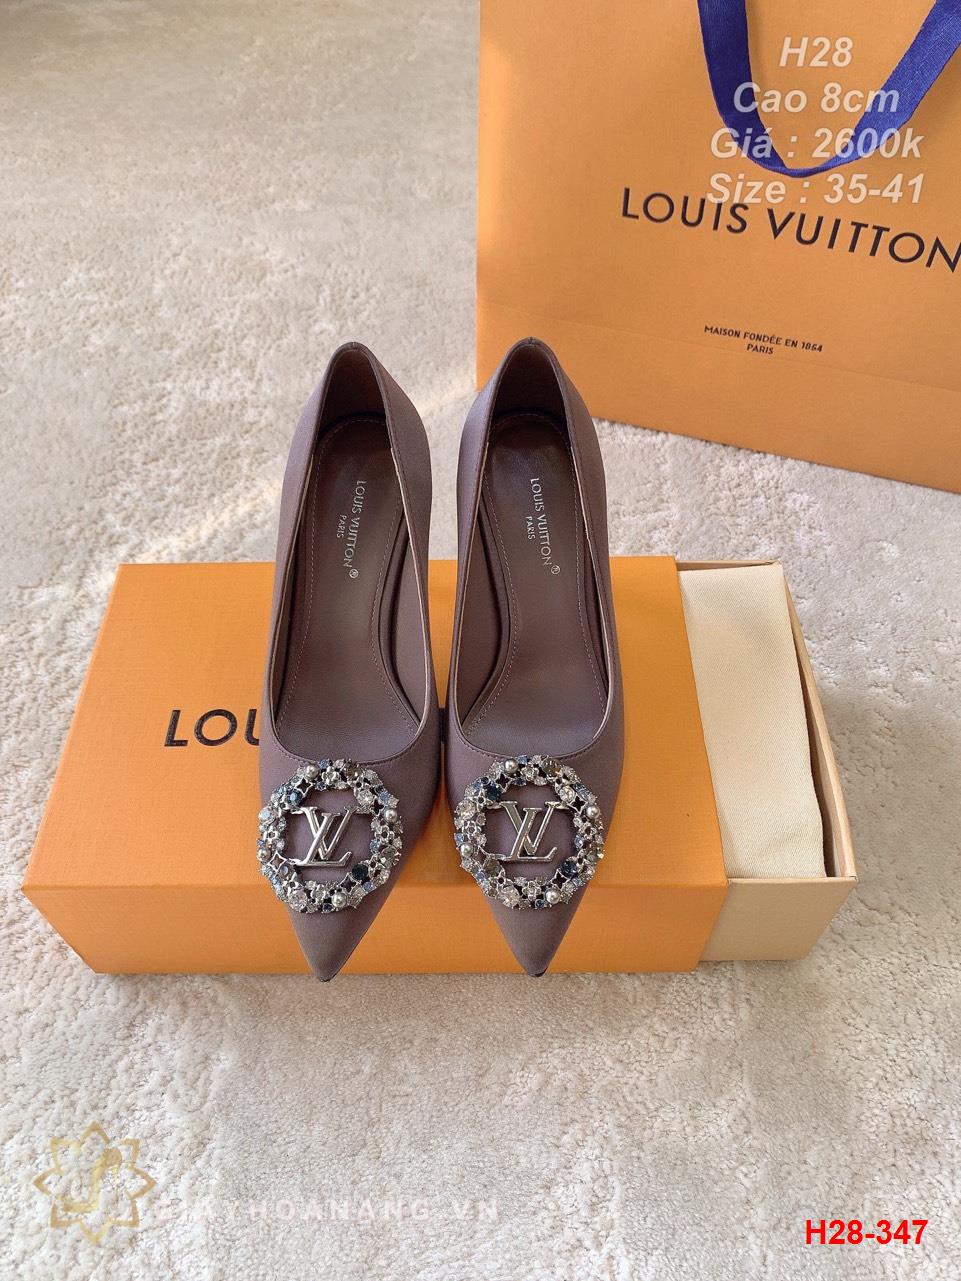 H28-347 Louis Vuitton giày cao 8cm siêu cấp